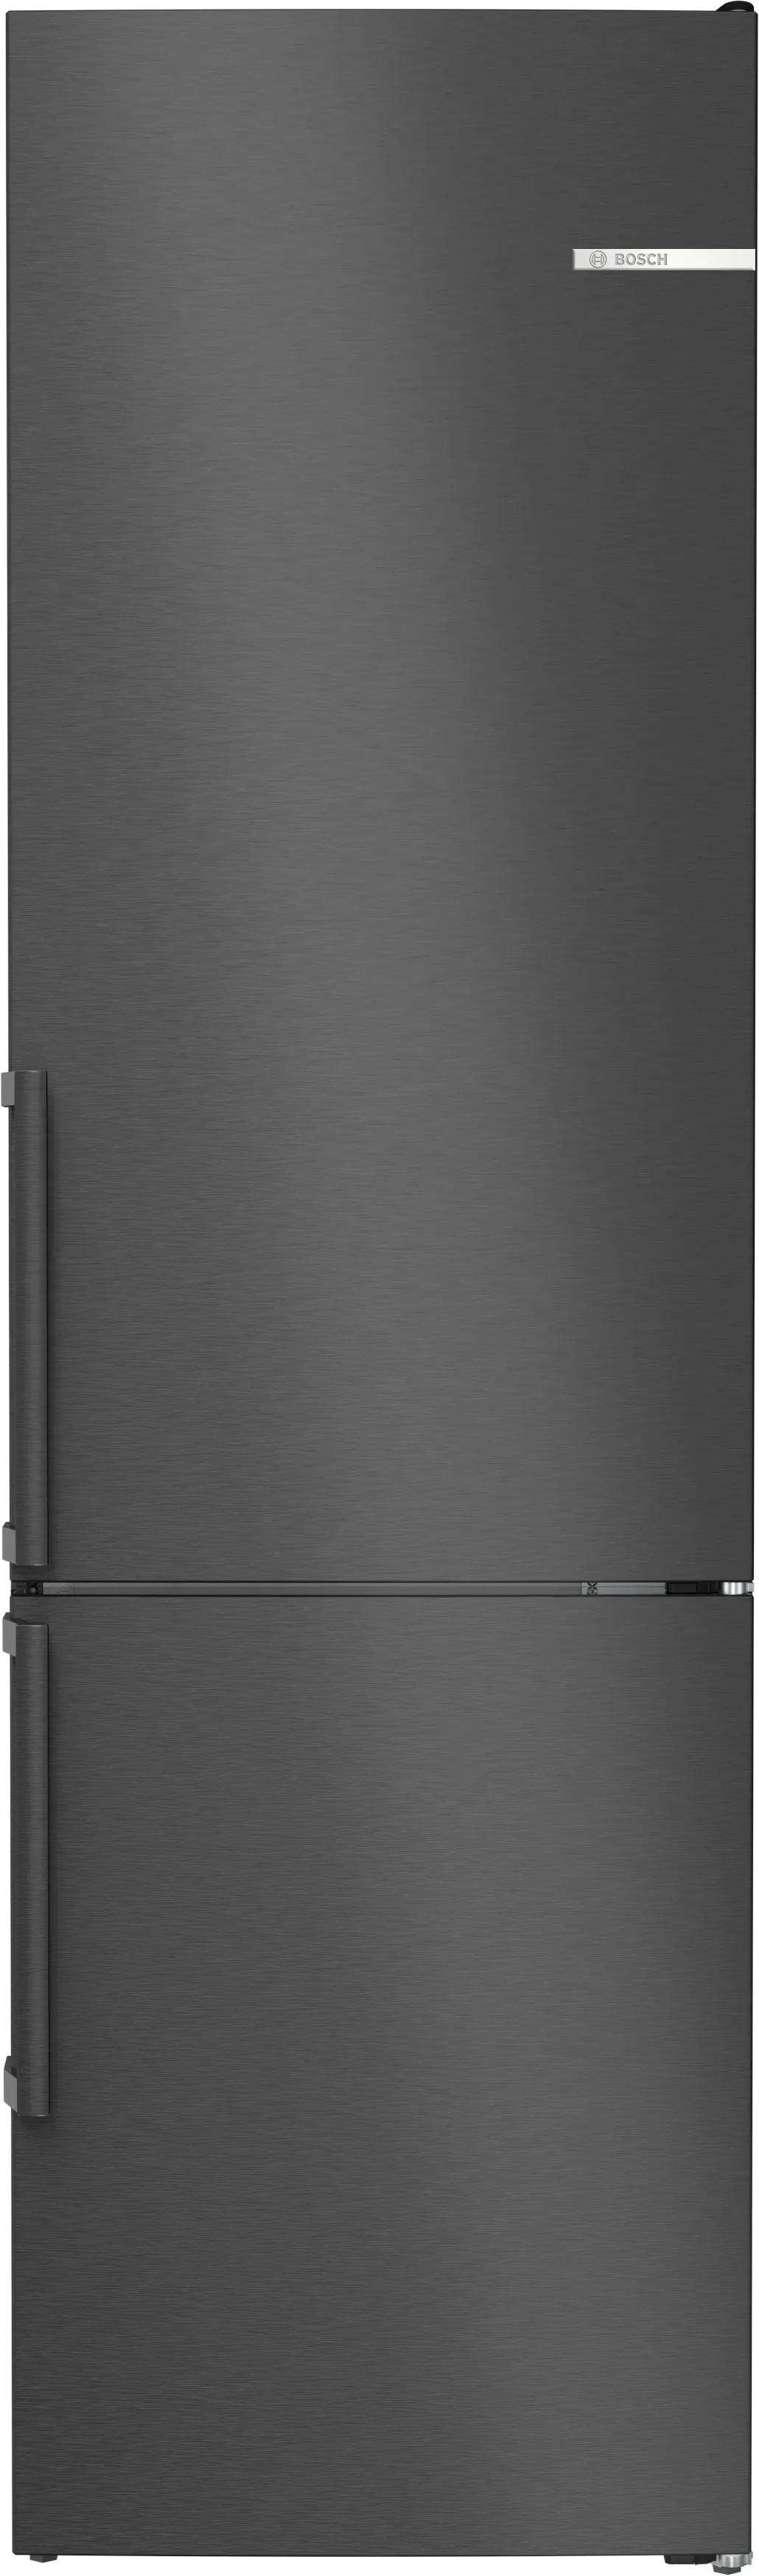 Serie 4 Volně stojící chladnička s mrazákem dole 203 x 60 cm černá matná ocel s úpravou proti otiskům prstů 